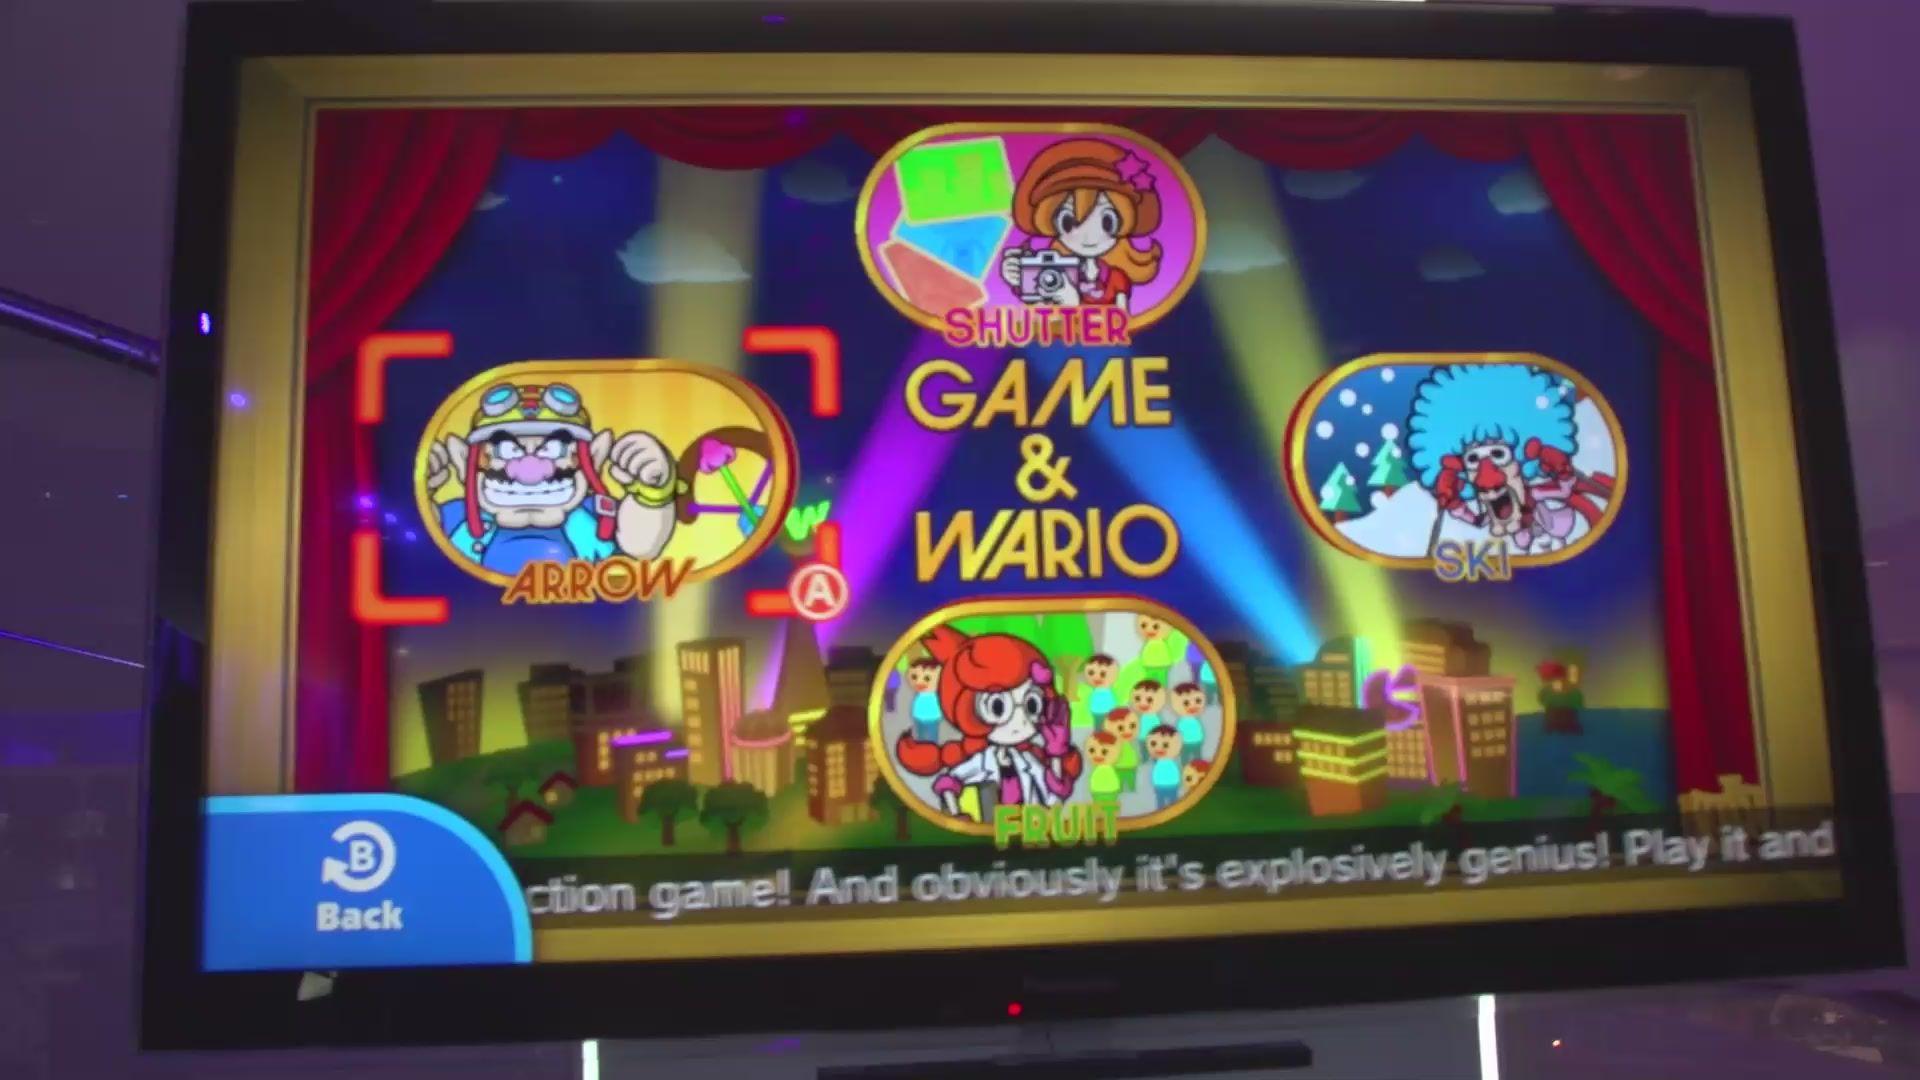 Giant Bomb Disco Logo - Game & Wario (Game)